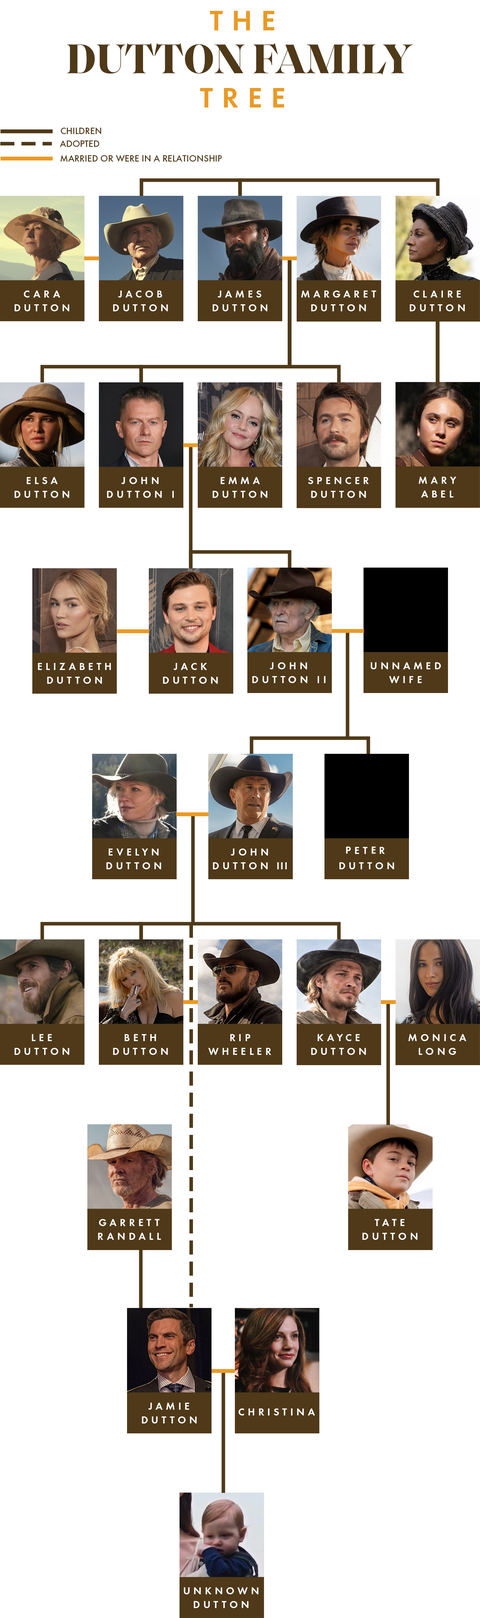 the yellowstone dutton family tree